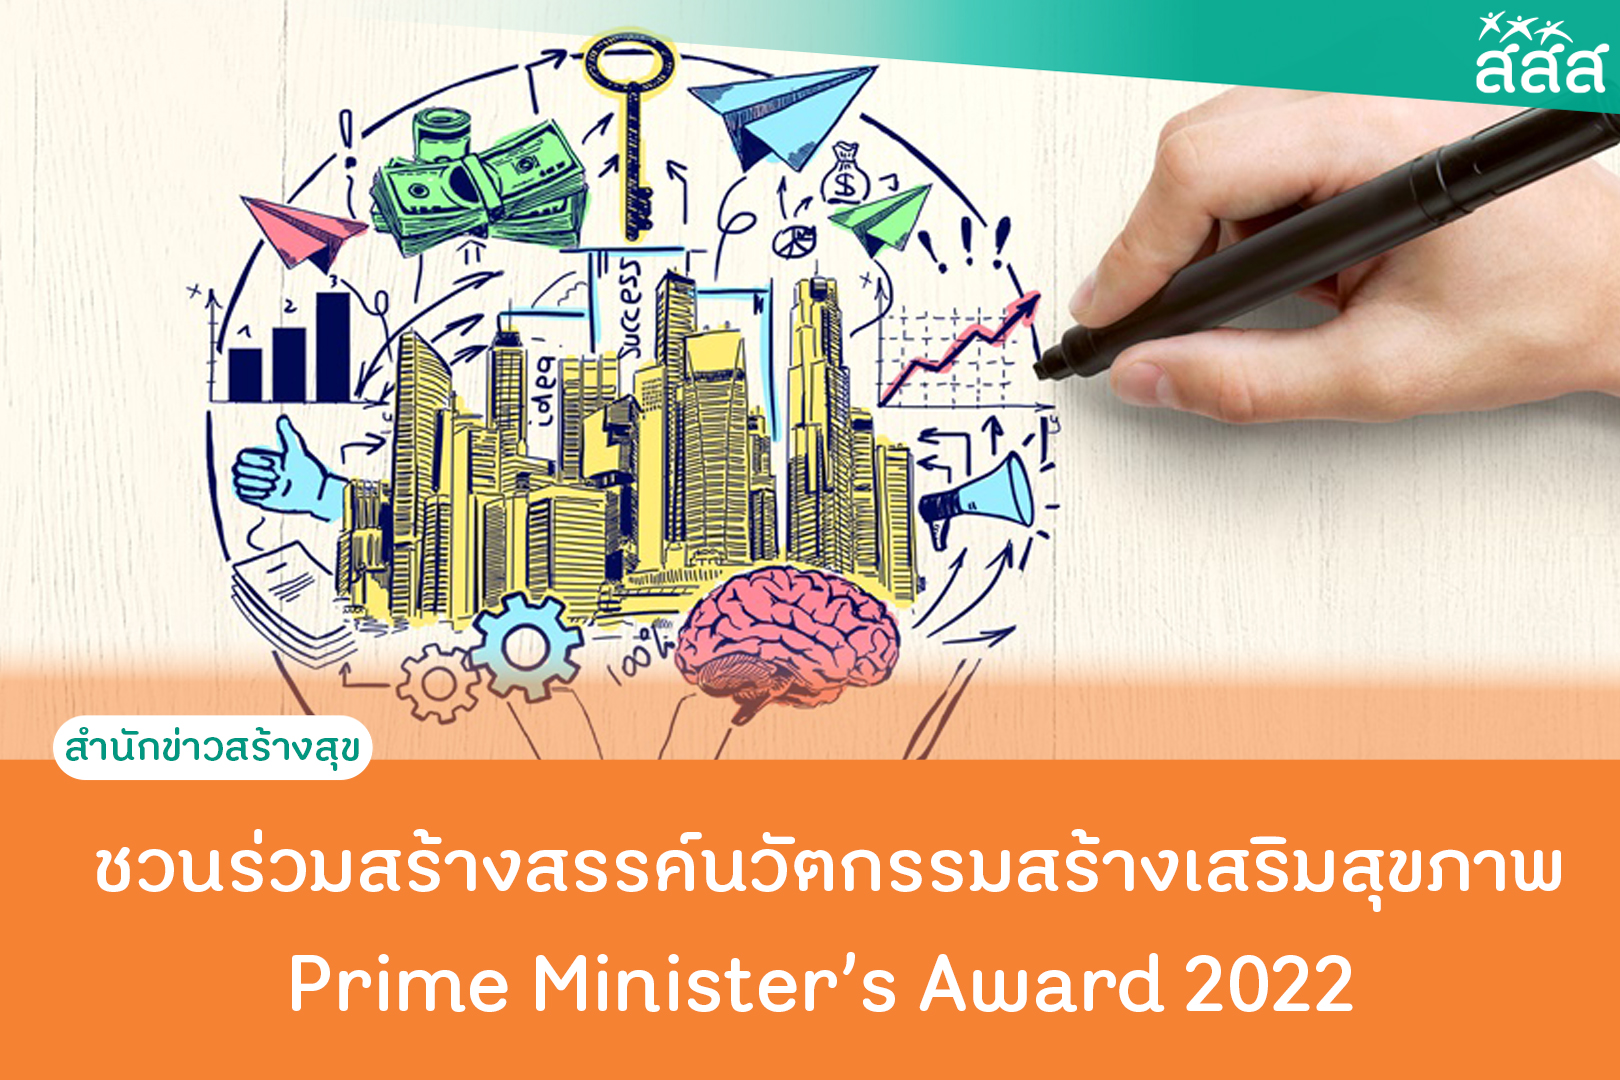 ชวนร่วมสร้างสรรค์นวัตกรรมสร้างเสริมสุขภาพ Prime Minister’s Award for Health Promotion Innovation 2022 thaihealth